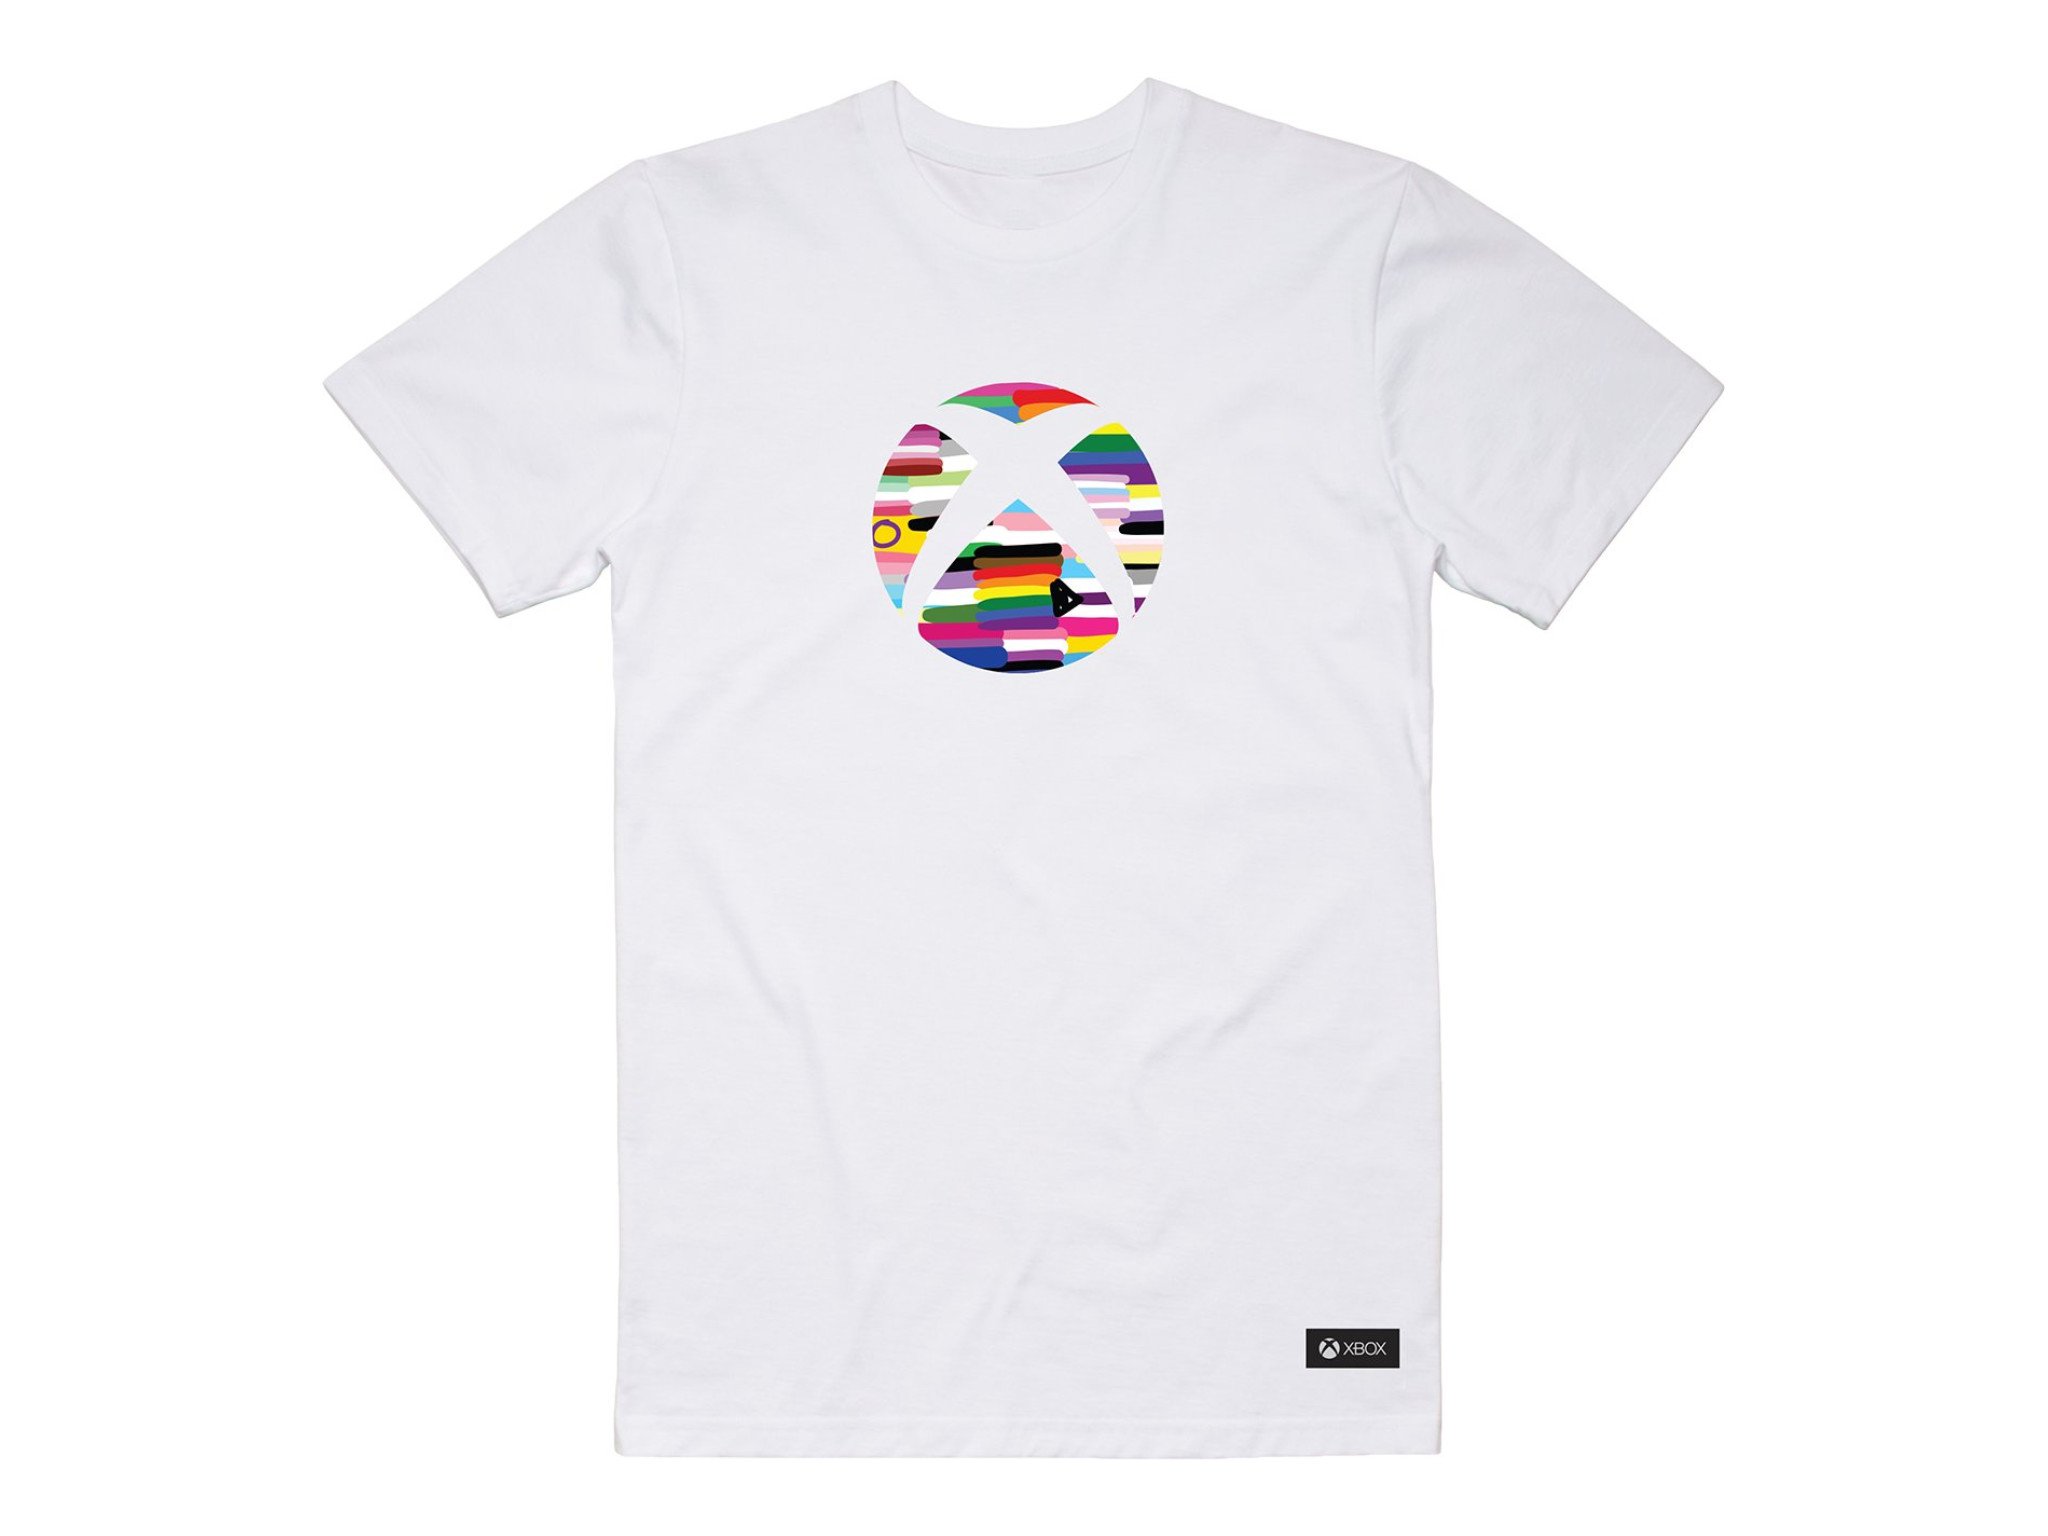 xbox-pride-t-shirt.jpg